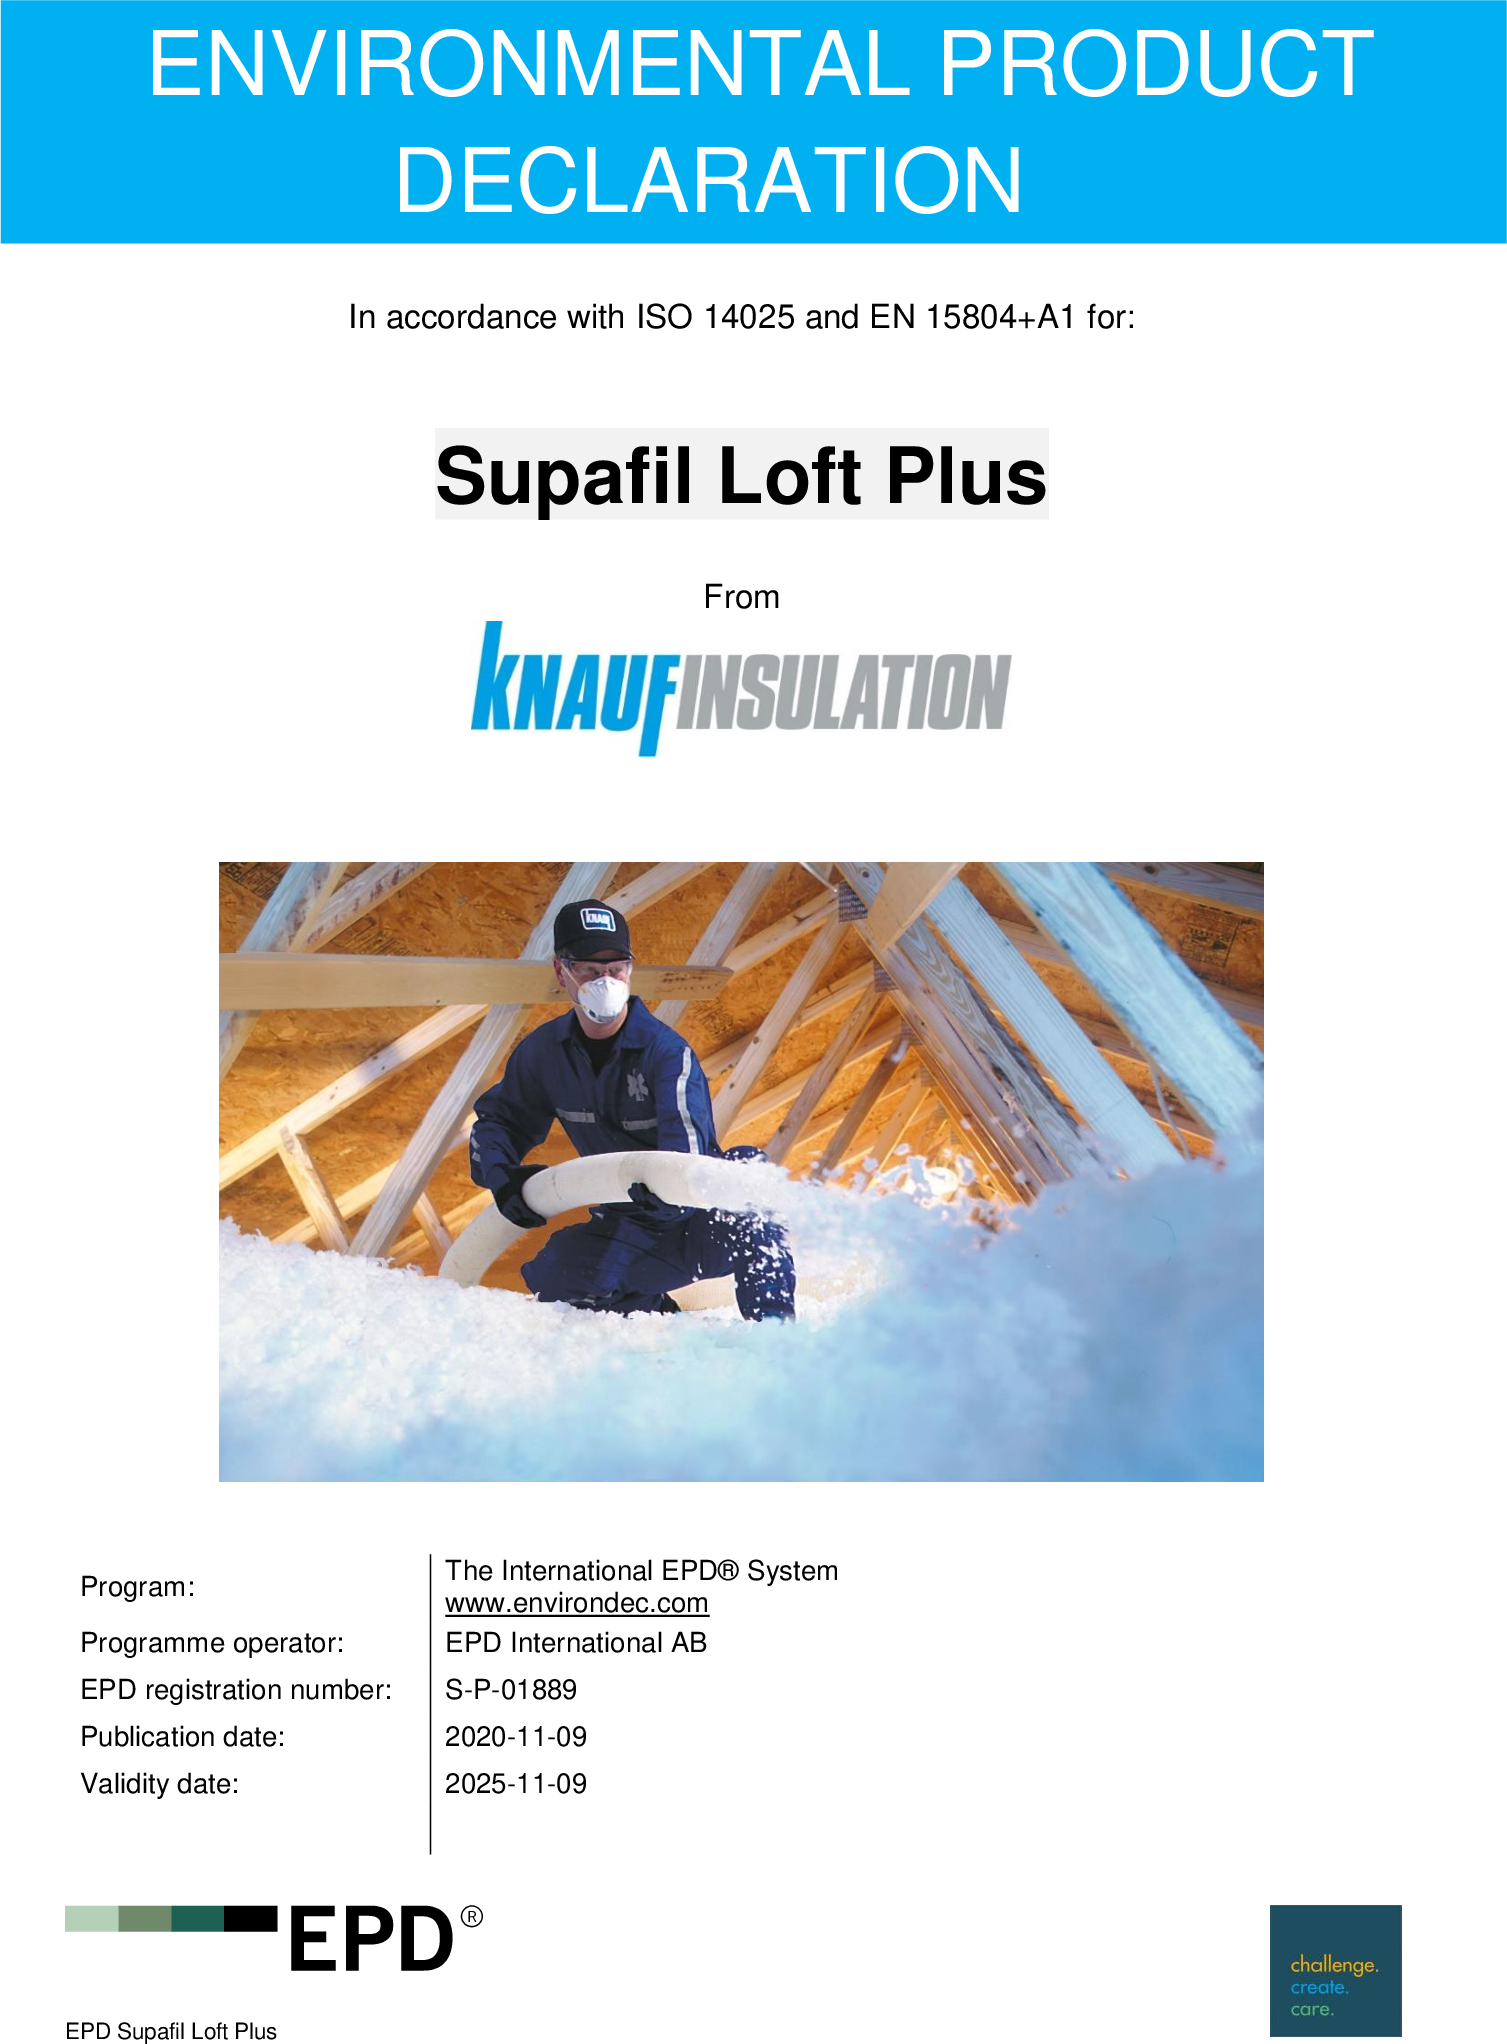 Supafil Loft Plus